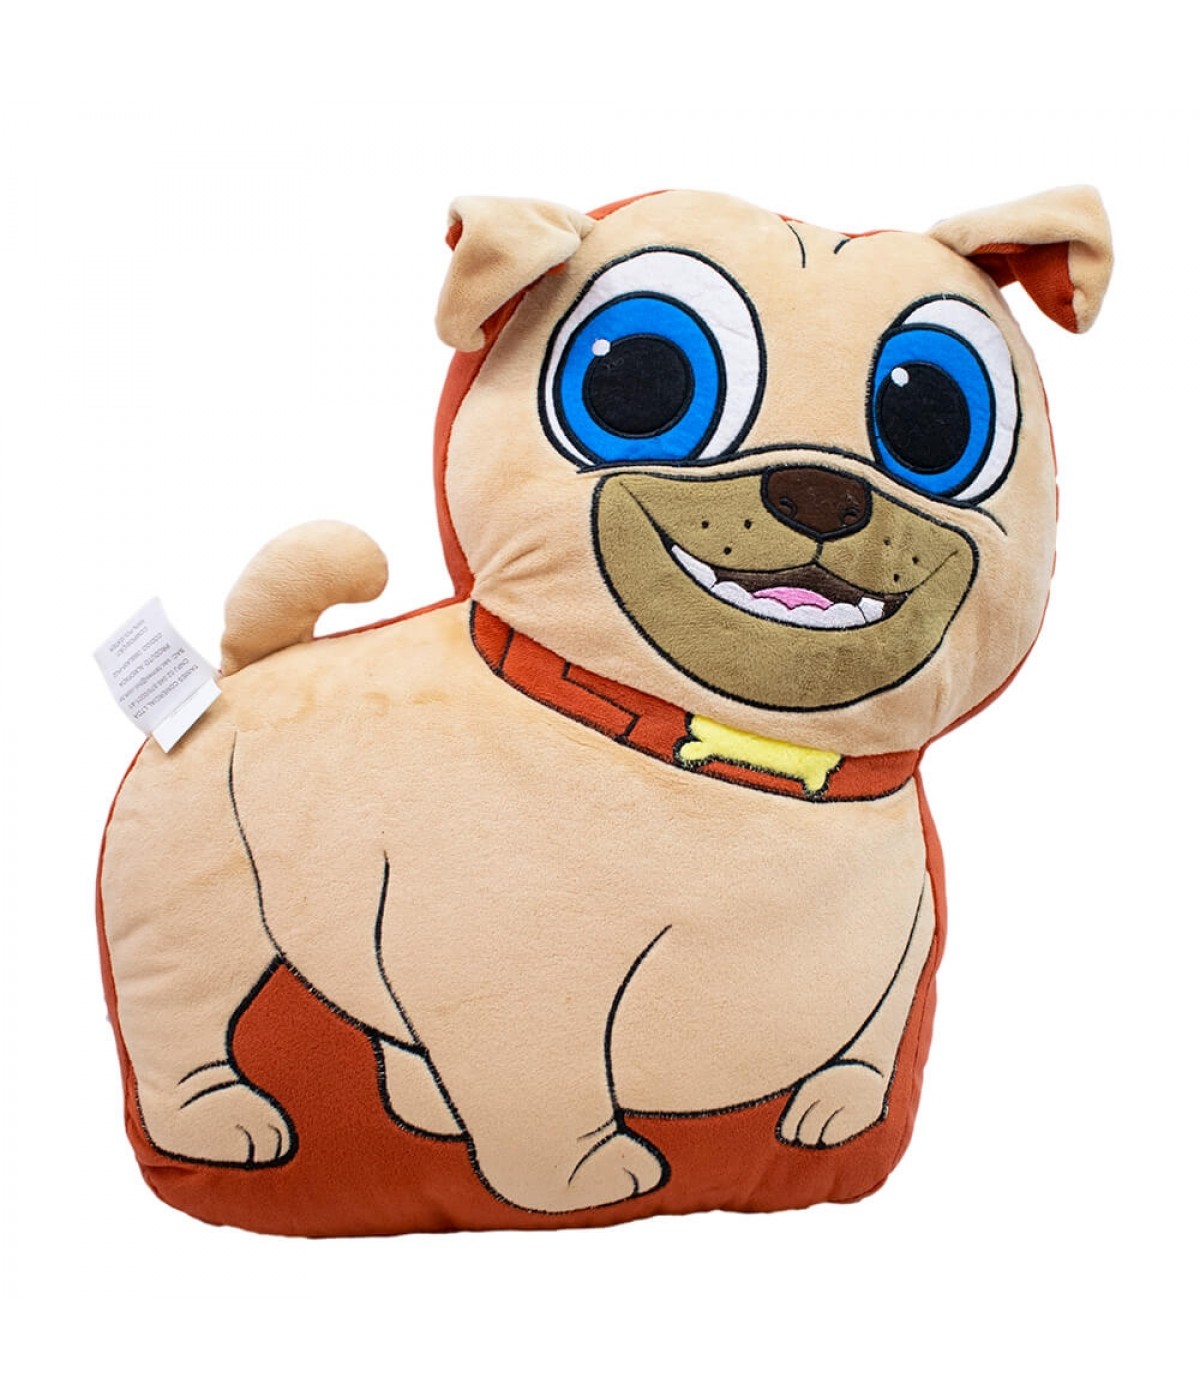 Almofada Rolly Puppy Dog Pals 40x14x37cm - Disney